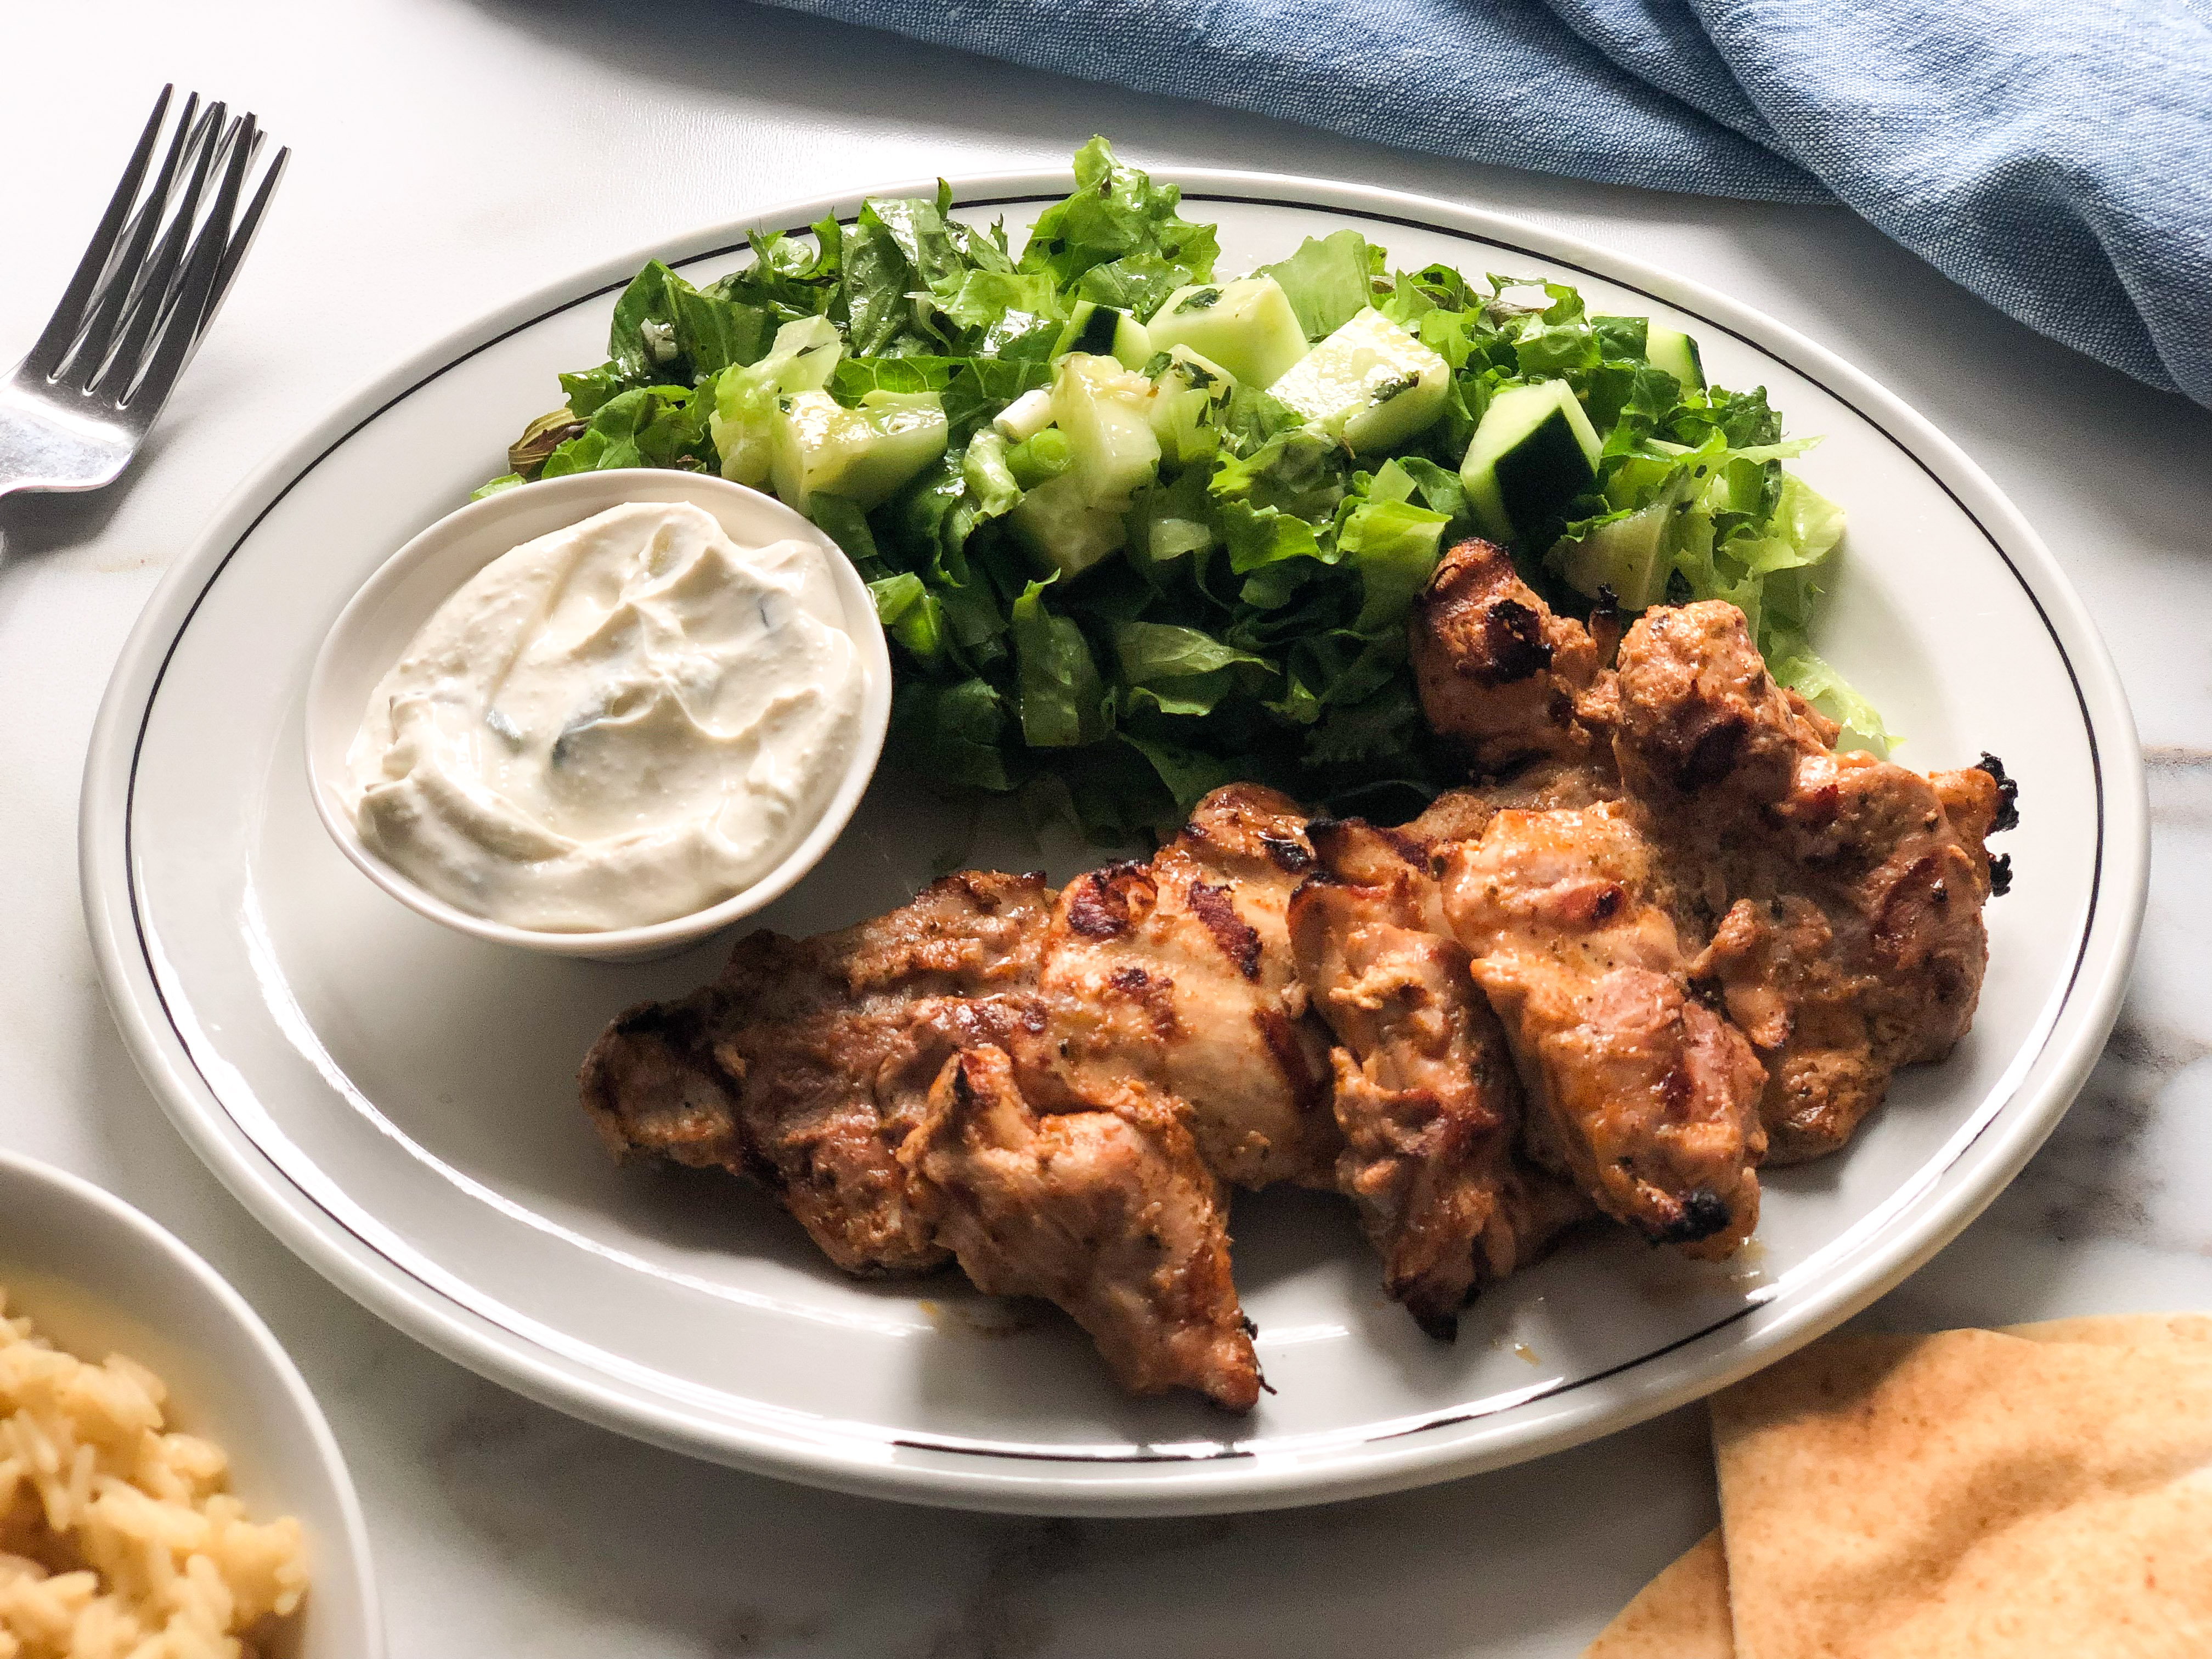 Greek marinated chicken thighs